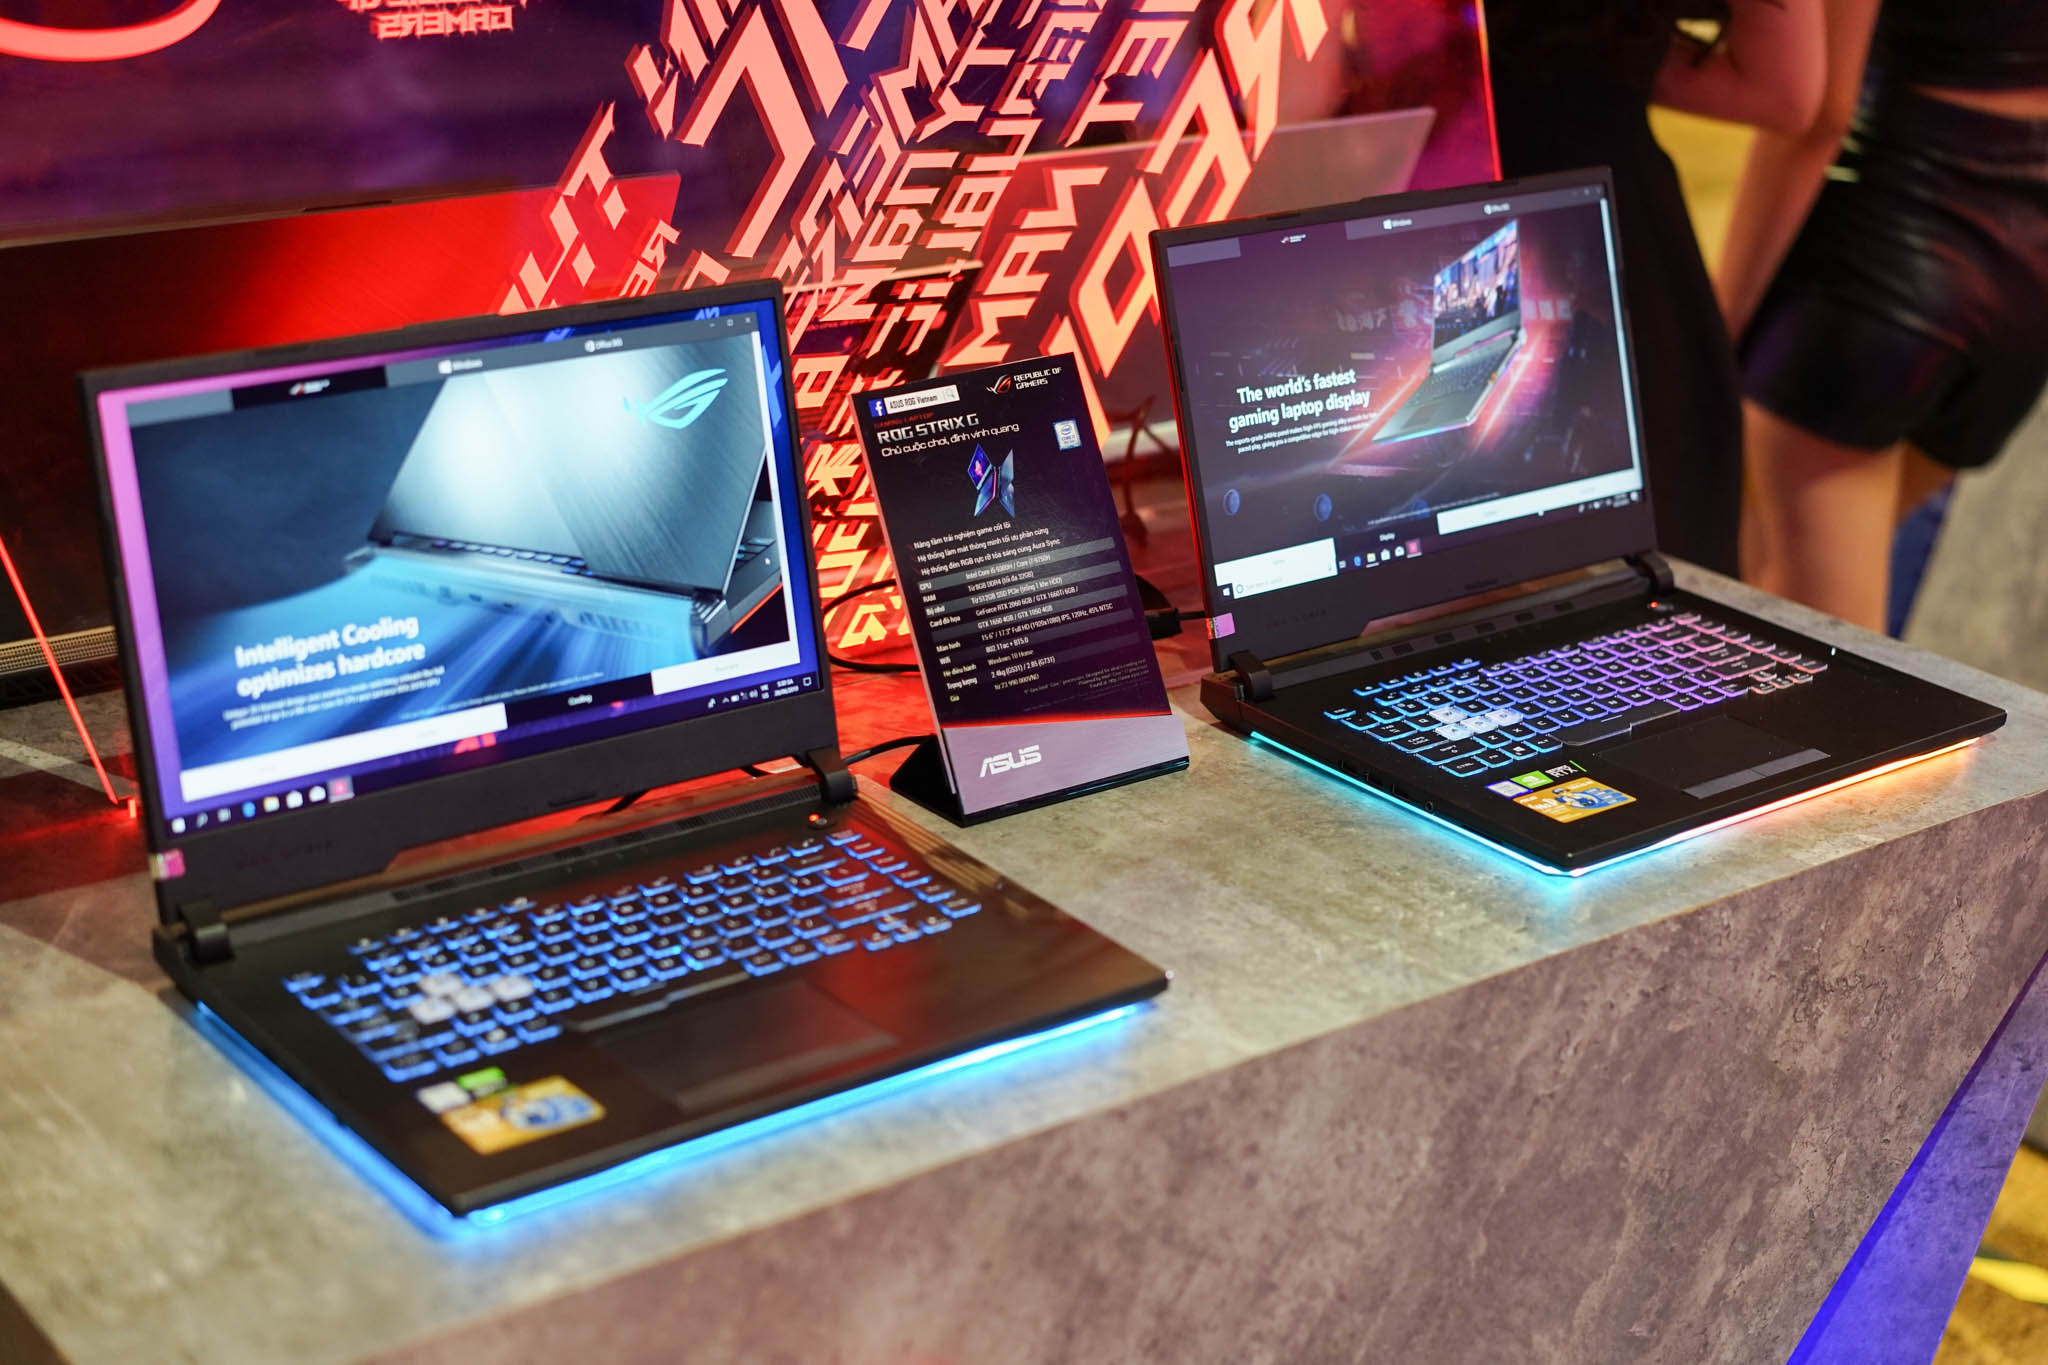 ASUS ROG giới thiệu
laptop gaming dùng Intel Core thế hệ 9 tại sự kiện BE
UNSTOPPABLE